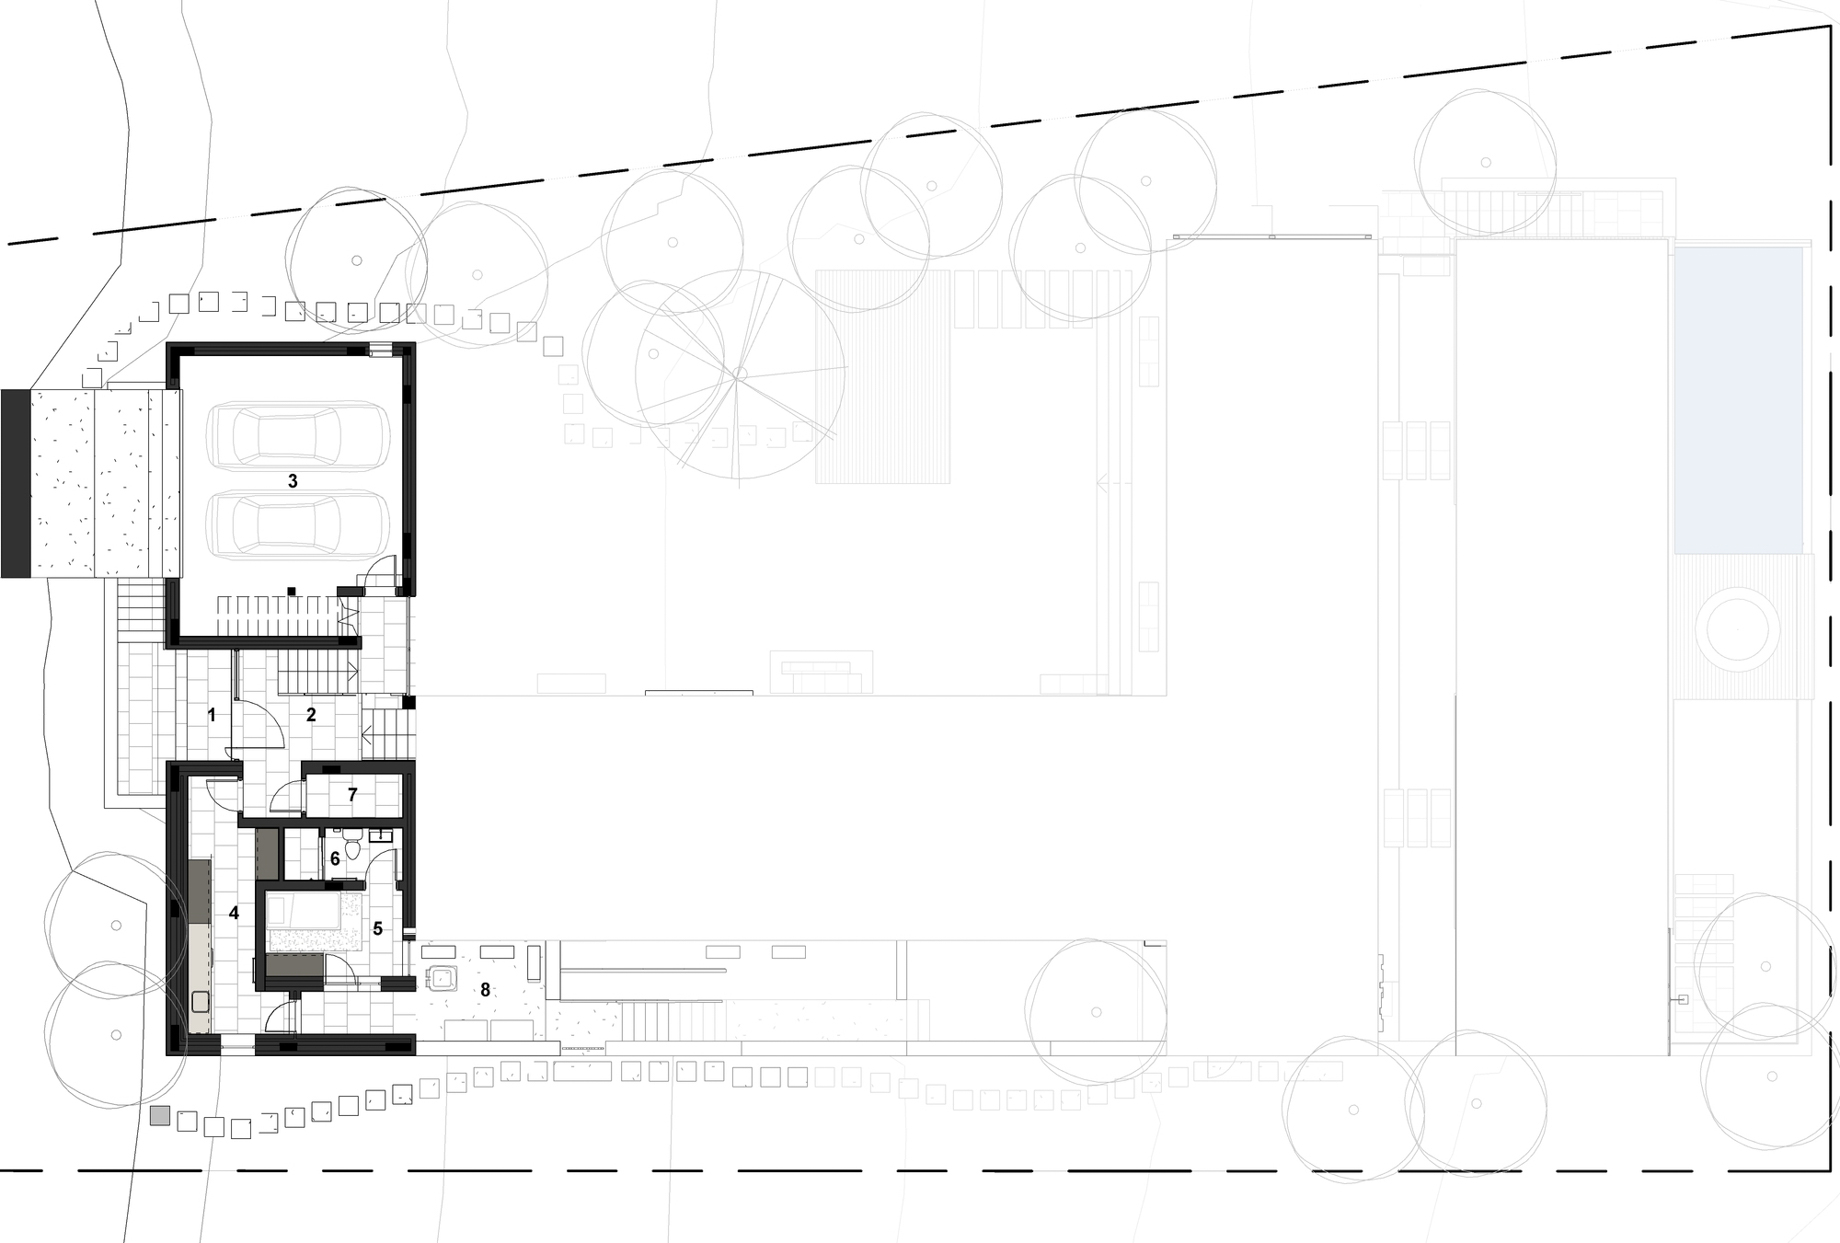 Floor Plans - Benguela Cove Wine Estate Residence - Hermanus, Overberg, South Africa